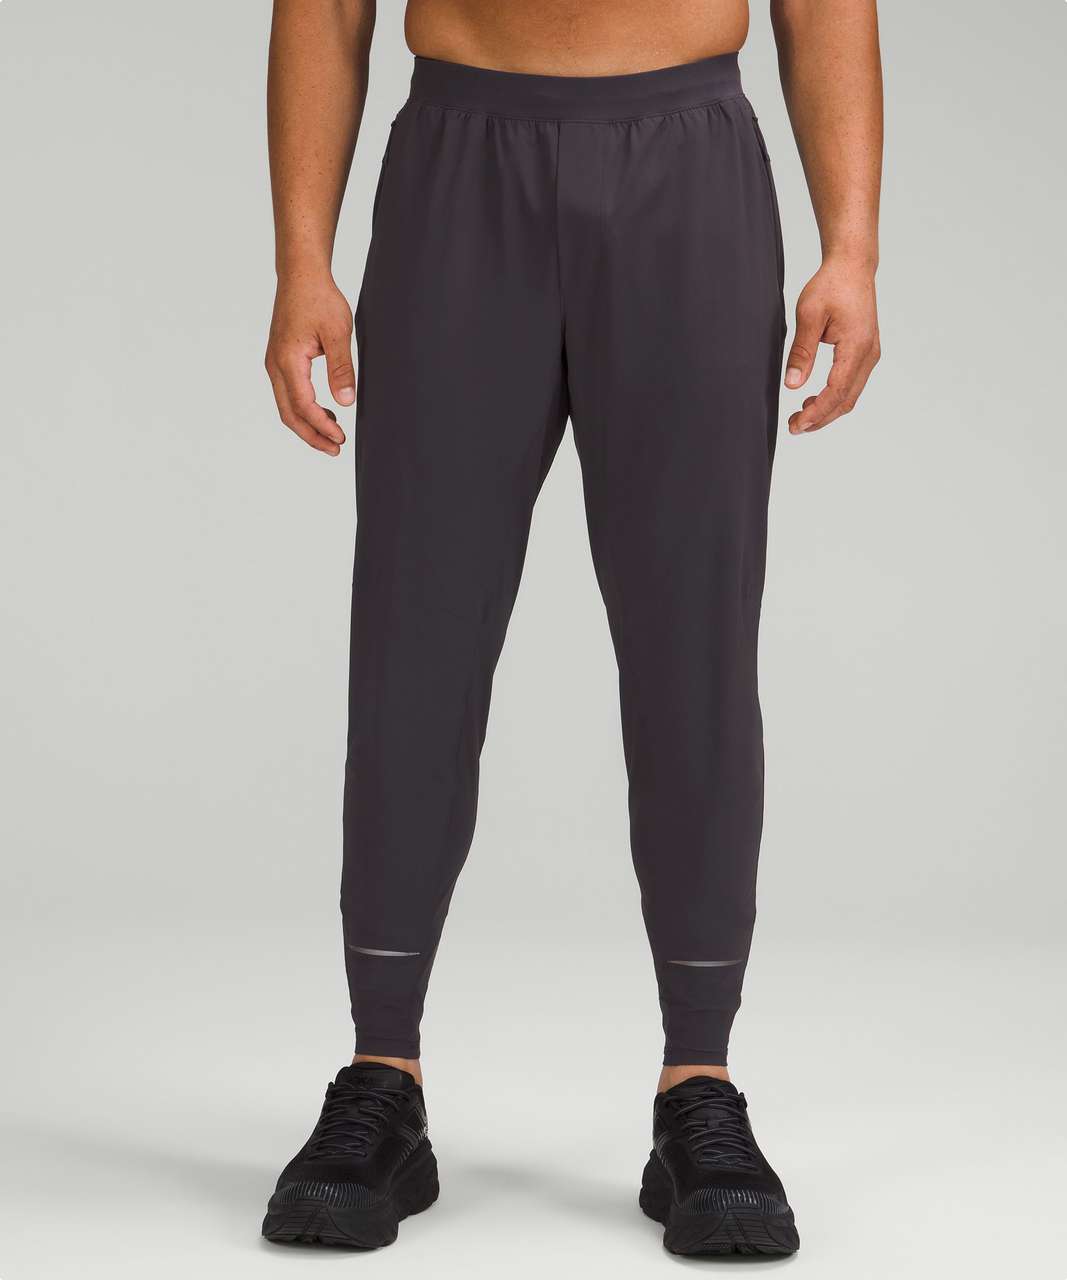 Nike Swift Men's Running Pants In White/black/black Reflective